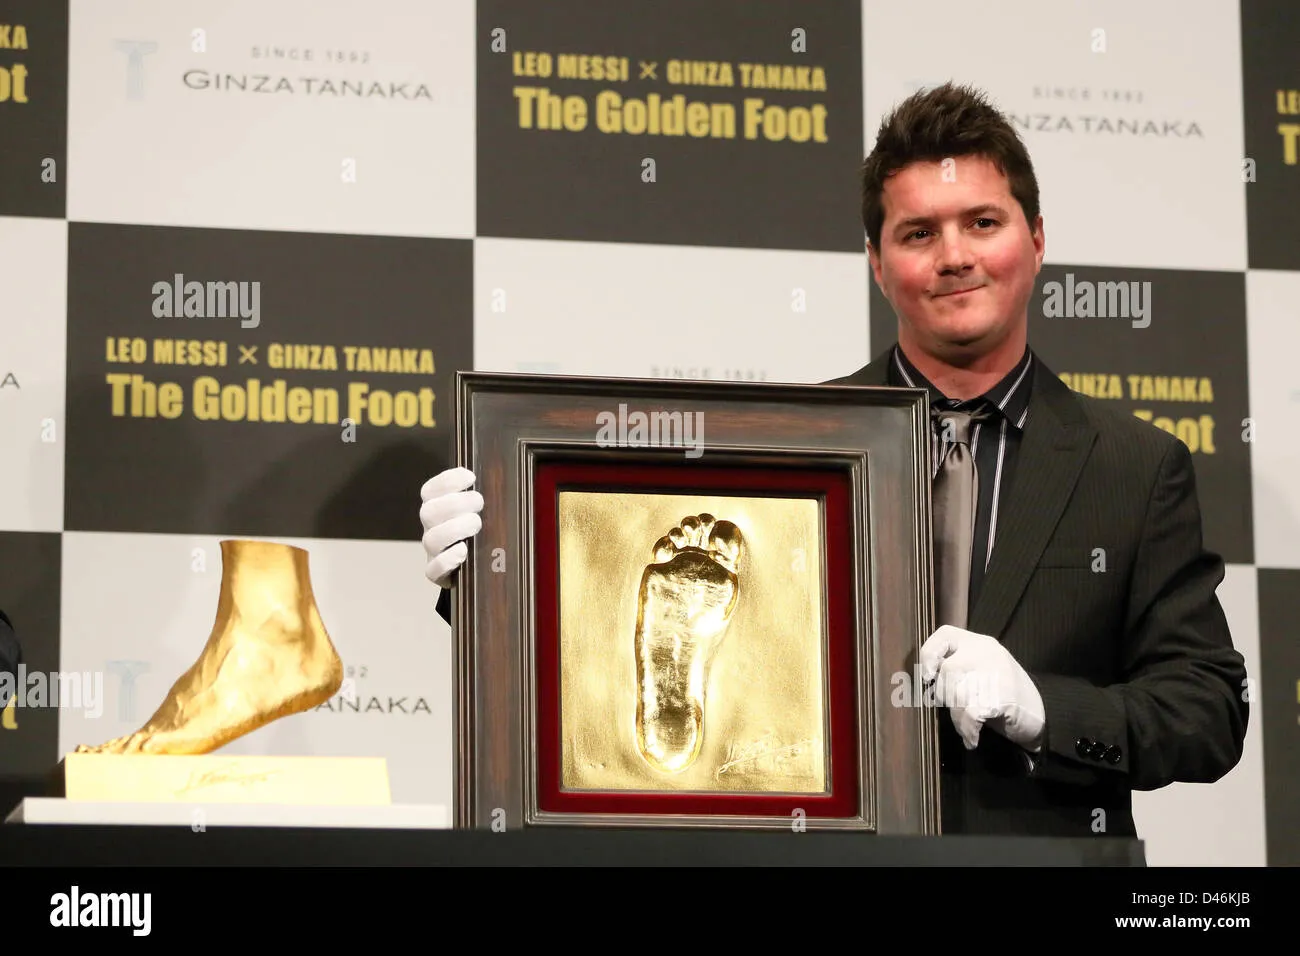 Messi được đề cử giải thưởng Bàn chân Vàng - Higuain thông báo giải nghệ